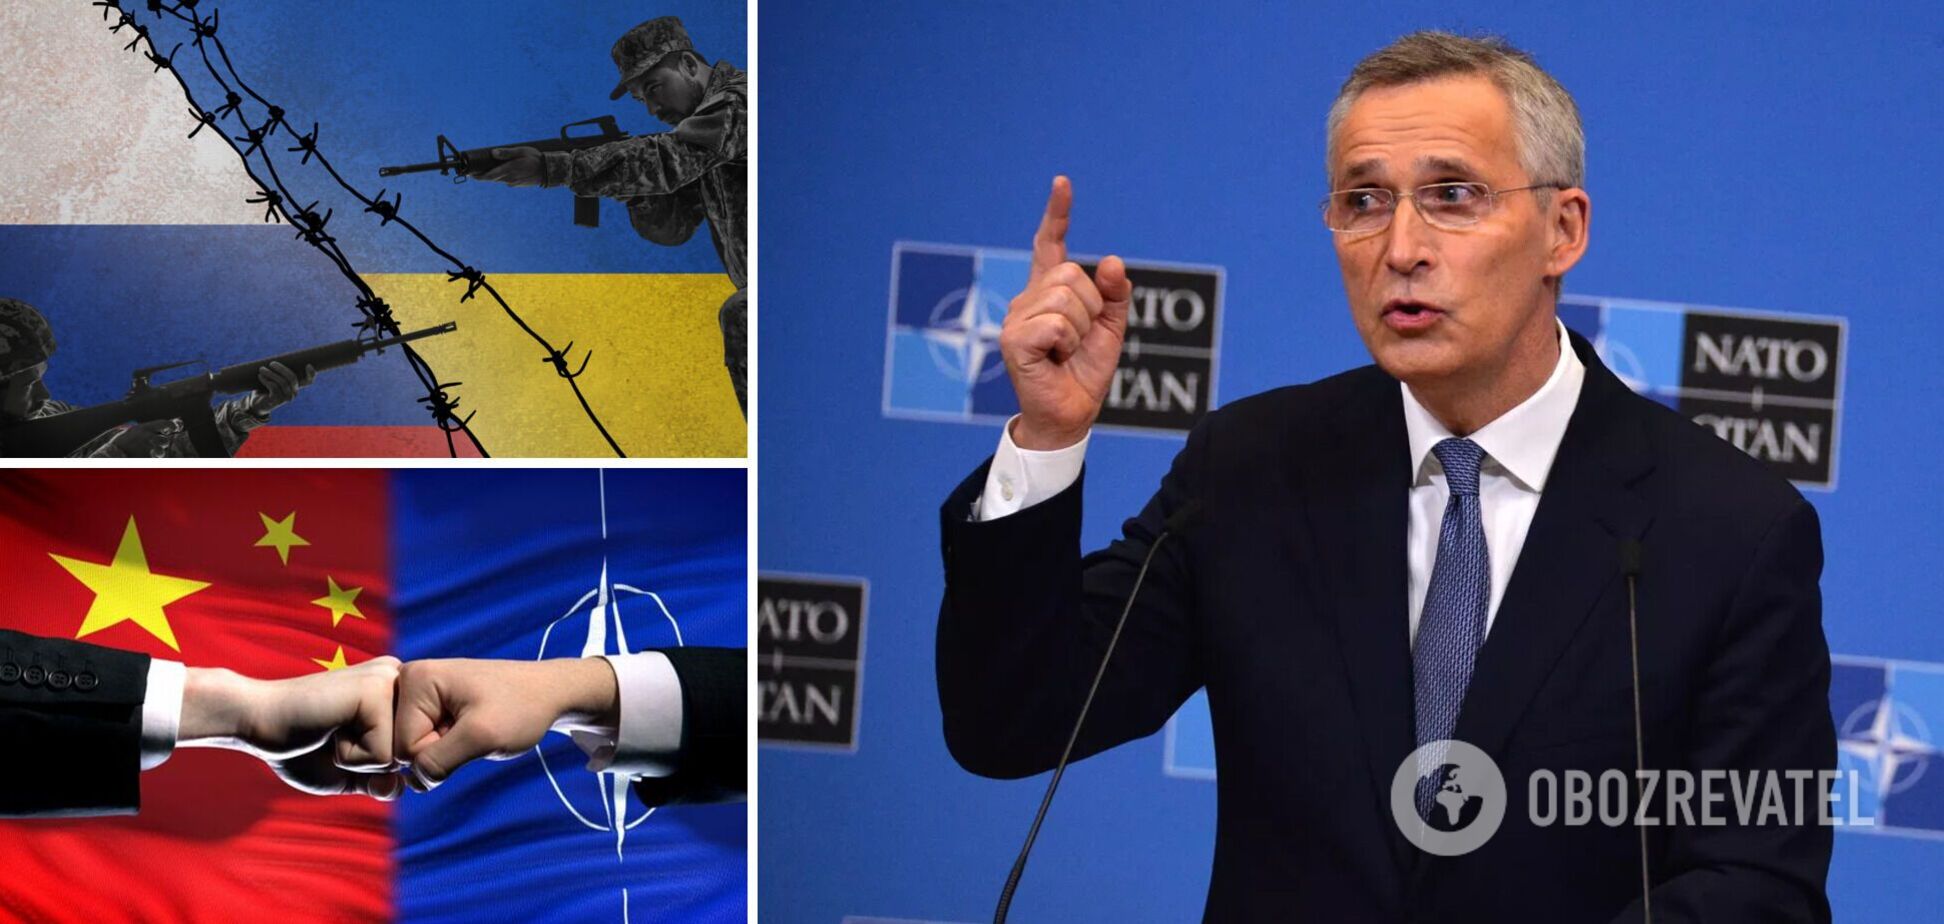 Россия – прямая угроза, Китай – не противник: в Мадриде проходит саммит НАТО. Главные заявления